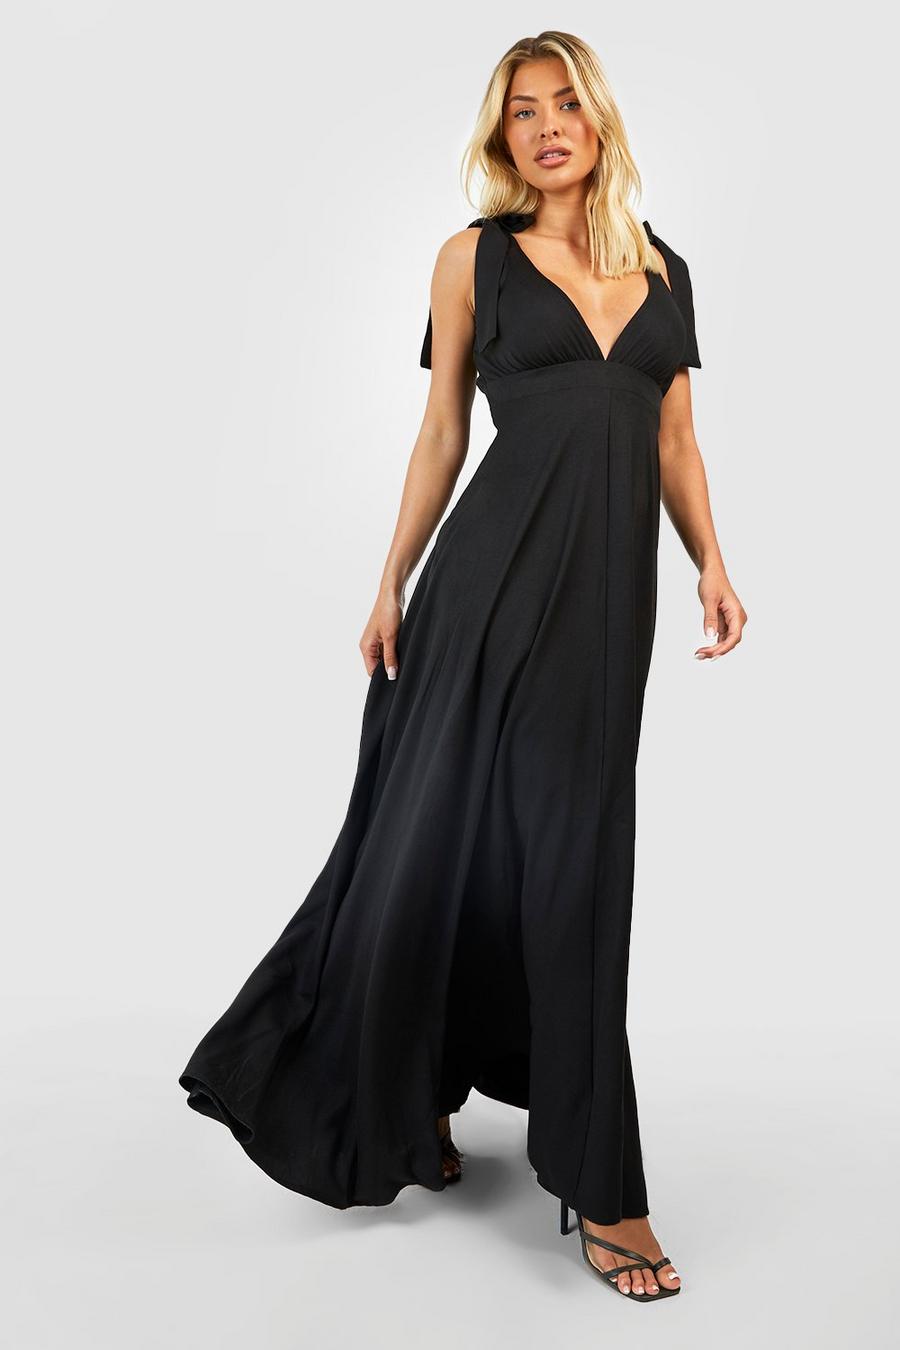 שחור שמלת מקסי עם מחשוף עמוק וכתפיות עם קשירה